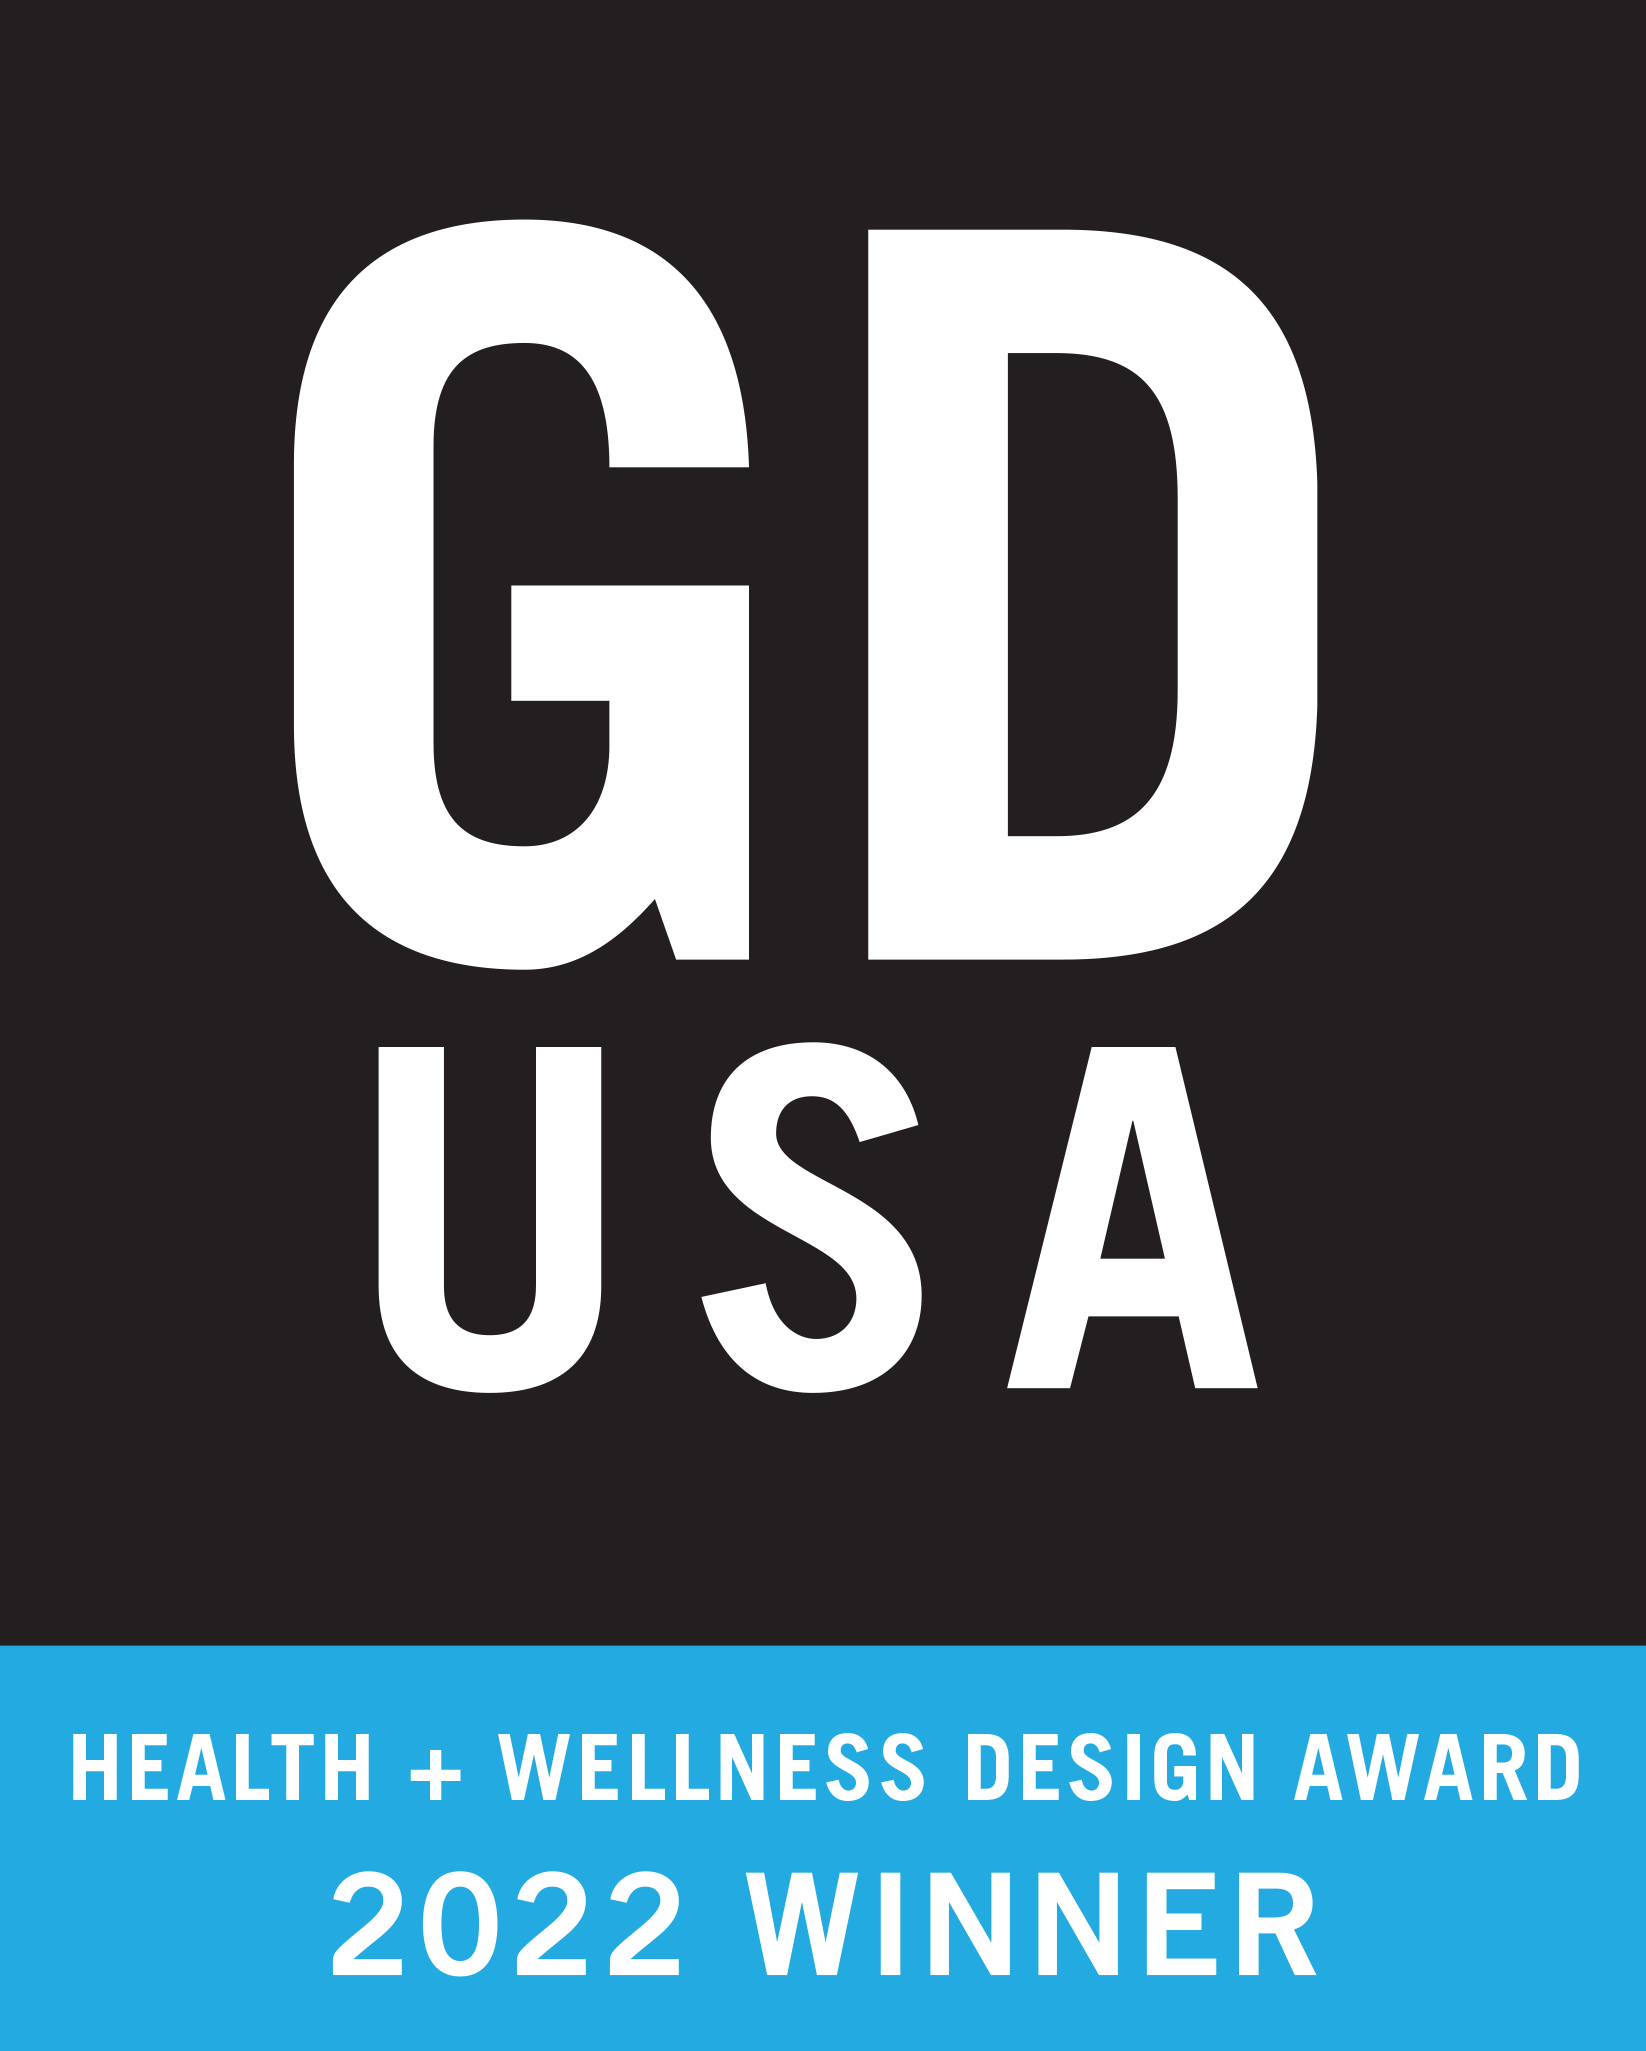 GD USA Health + Wellness Design Award 2022 Winner